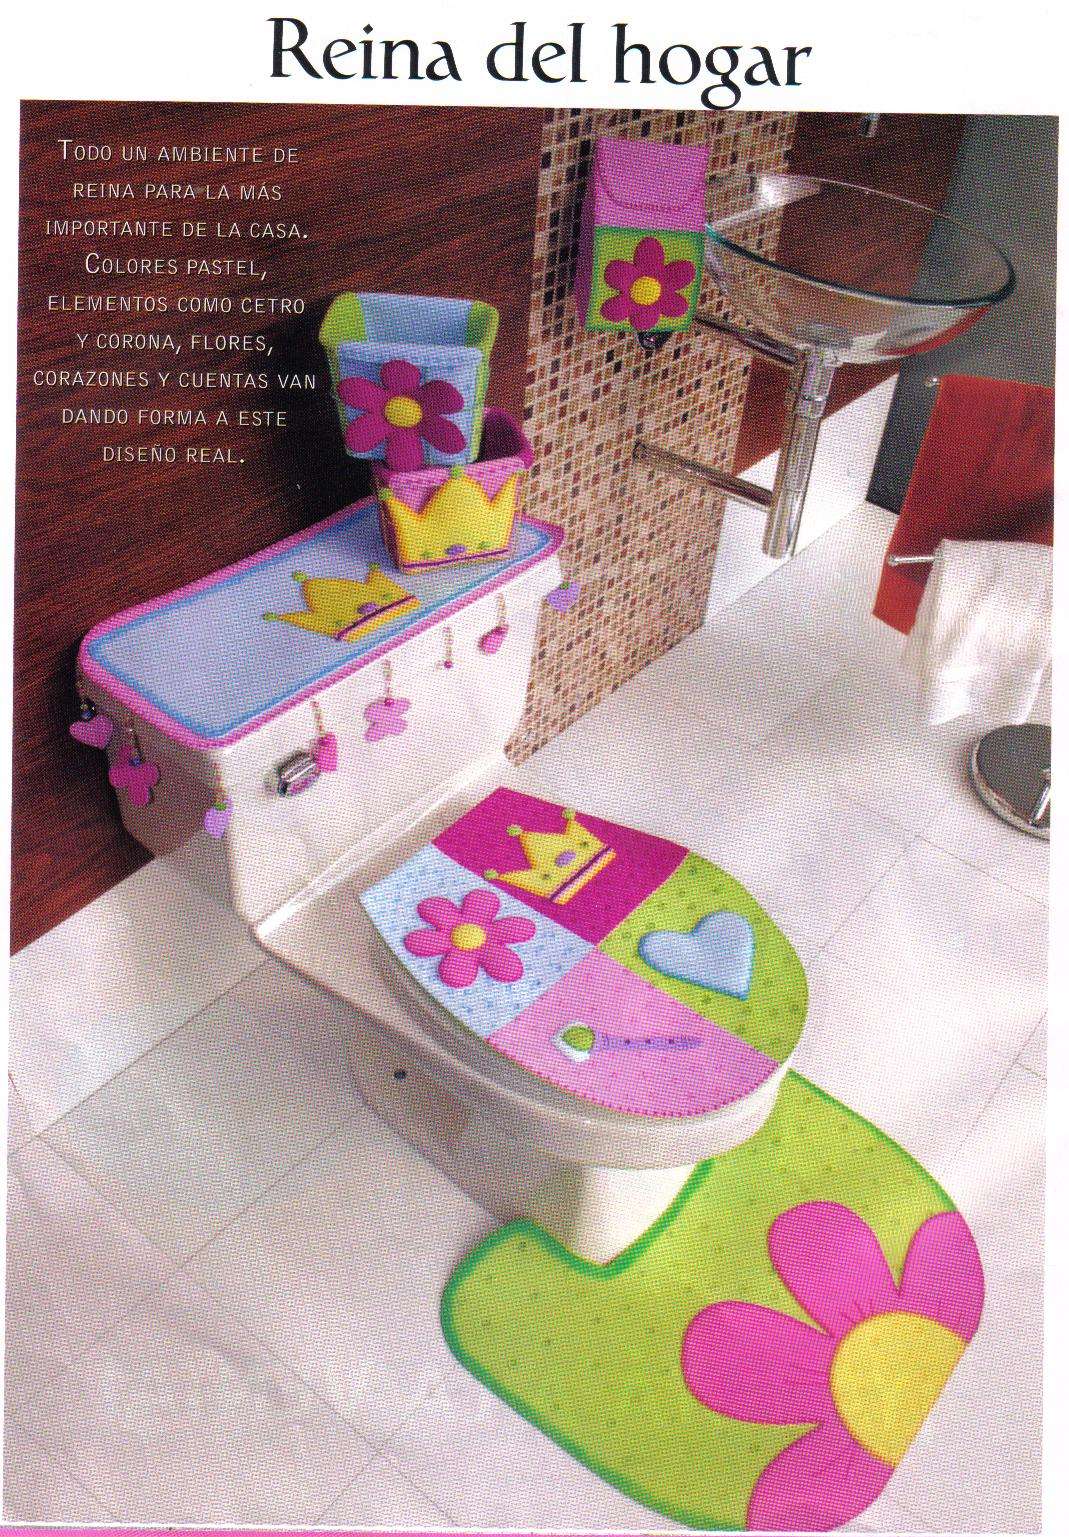 manualidades con foami: decoraciones para el baño en foami